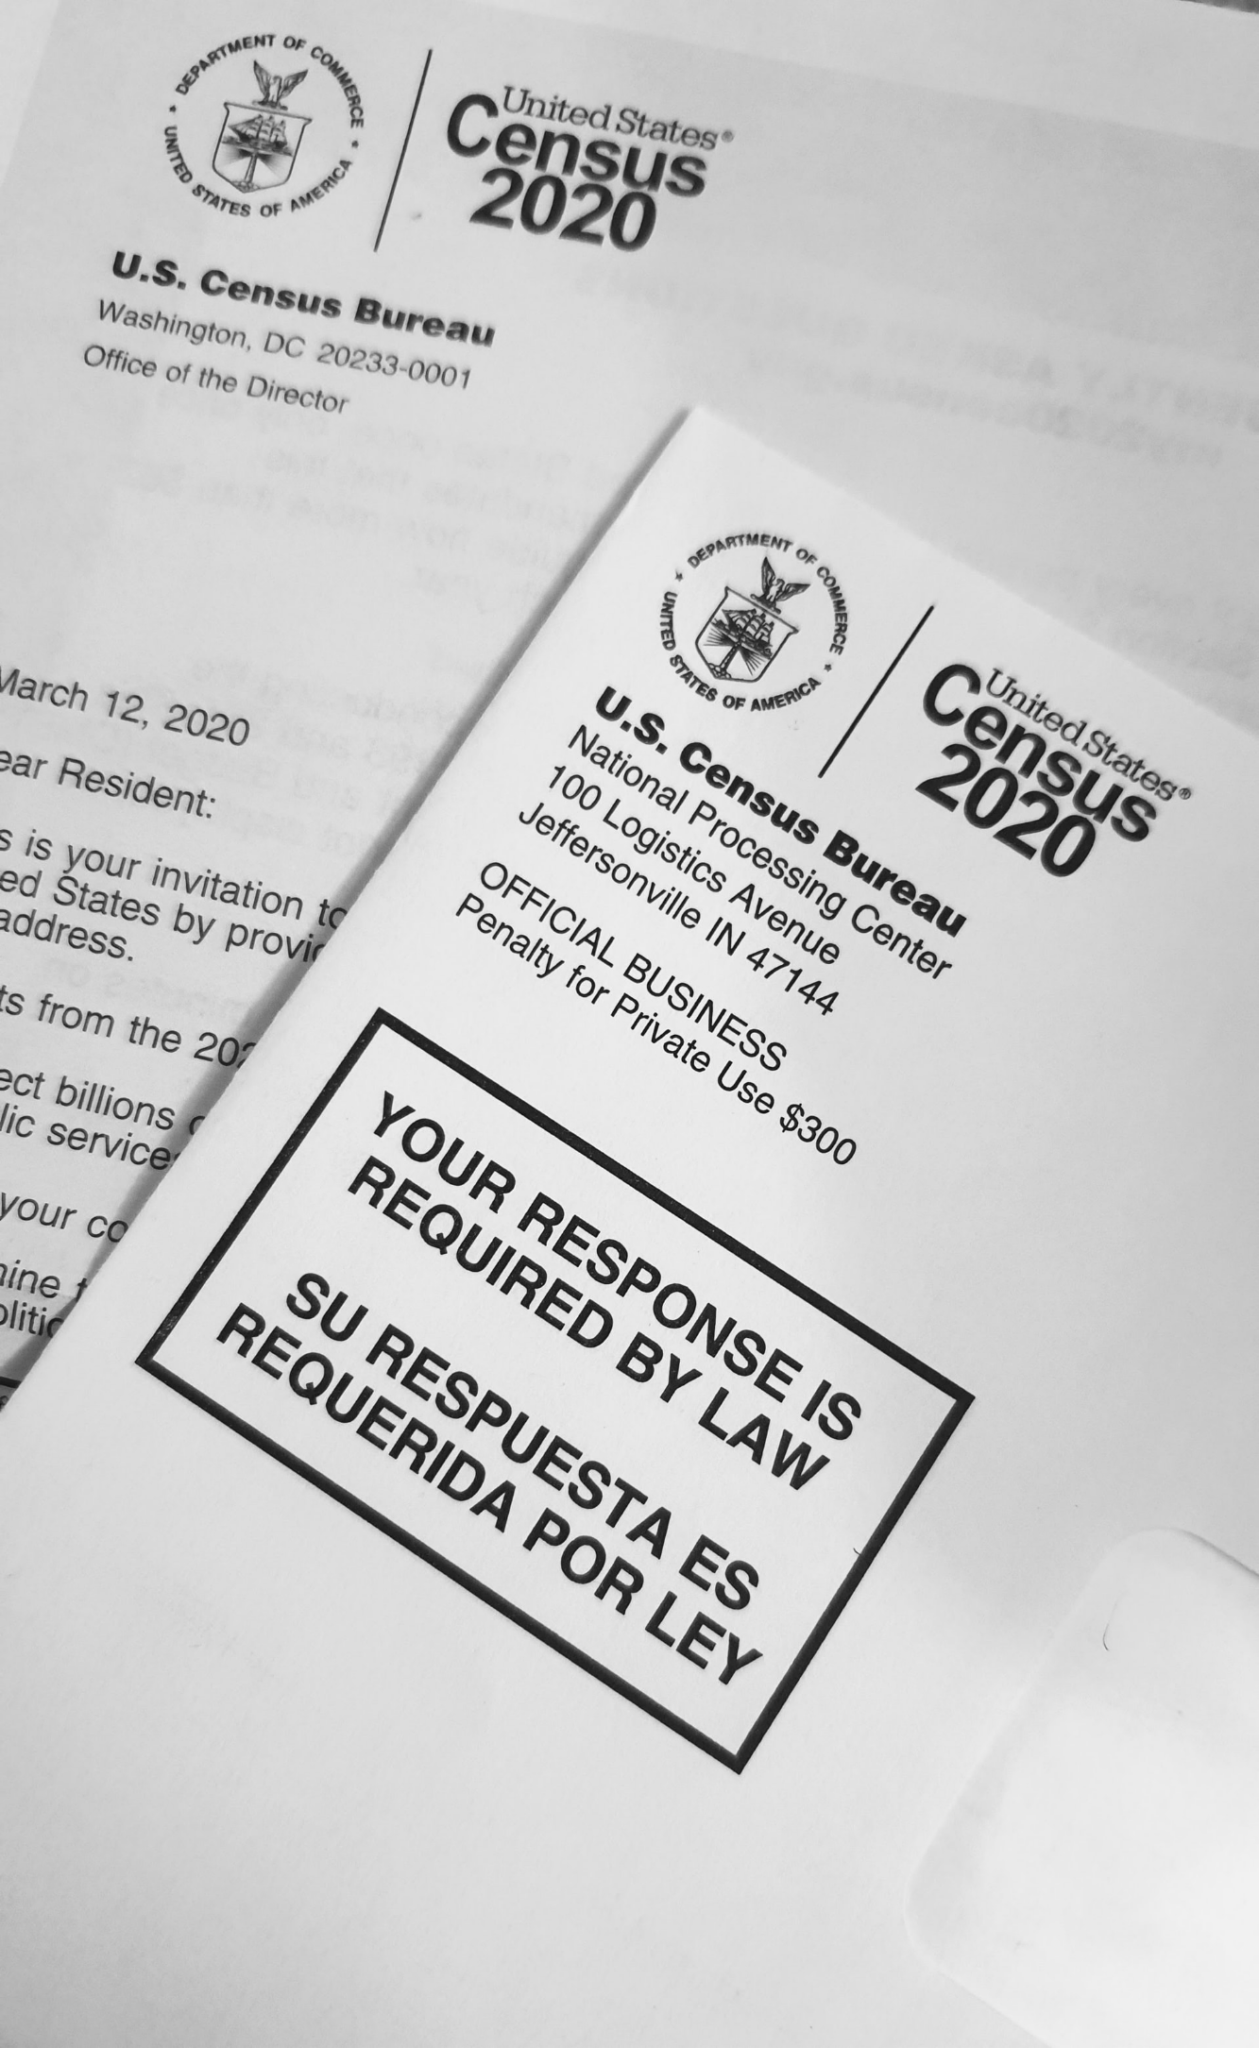 2020-census-data-release-update-cubit-s-blog